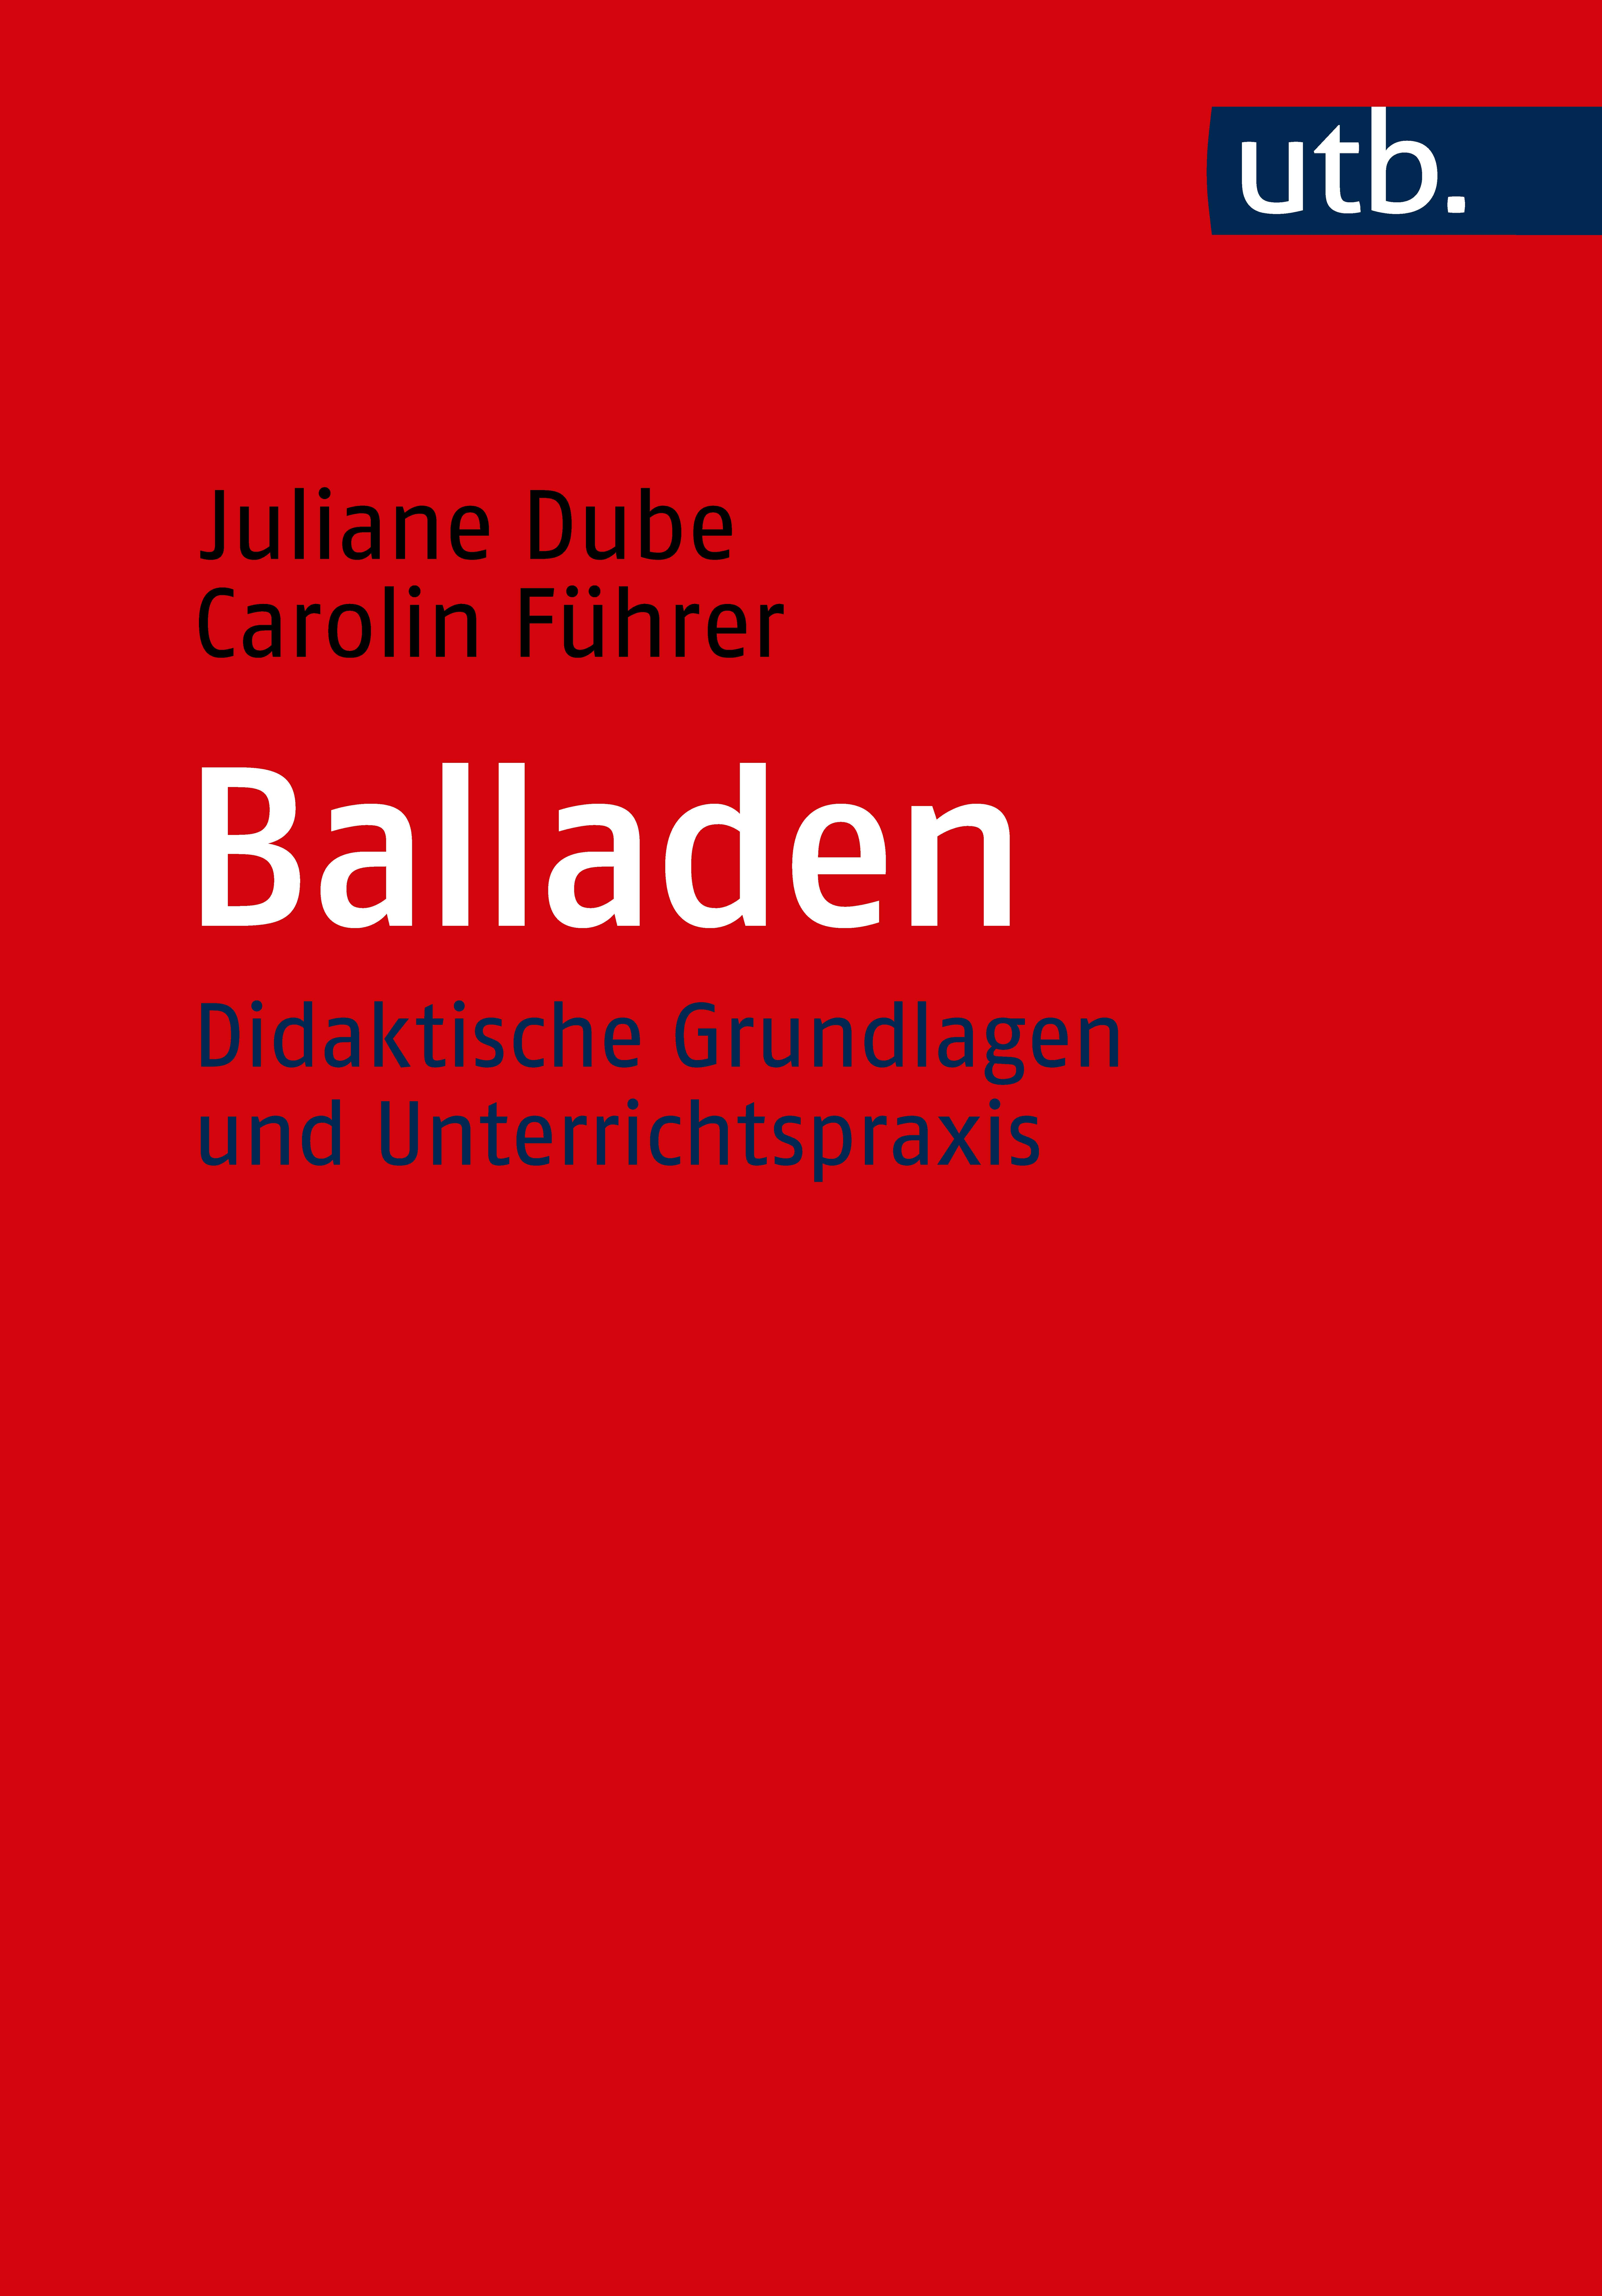 Dube, Juliane/Führer, Carolin: Balladen. Didaktische Grundlagen und Unterrichtspraxis